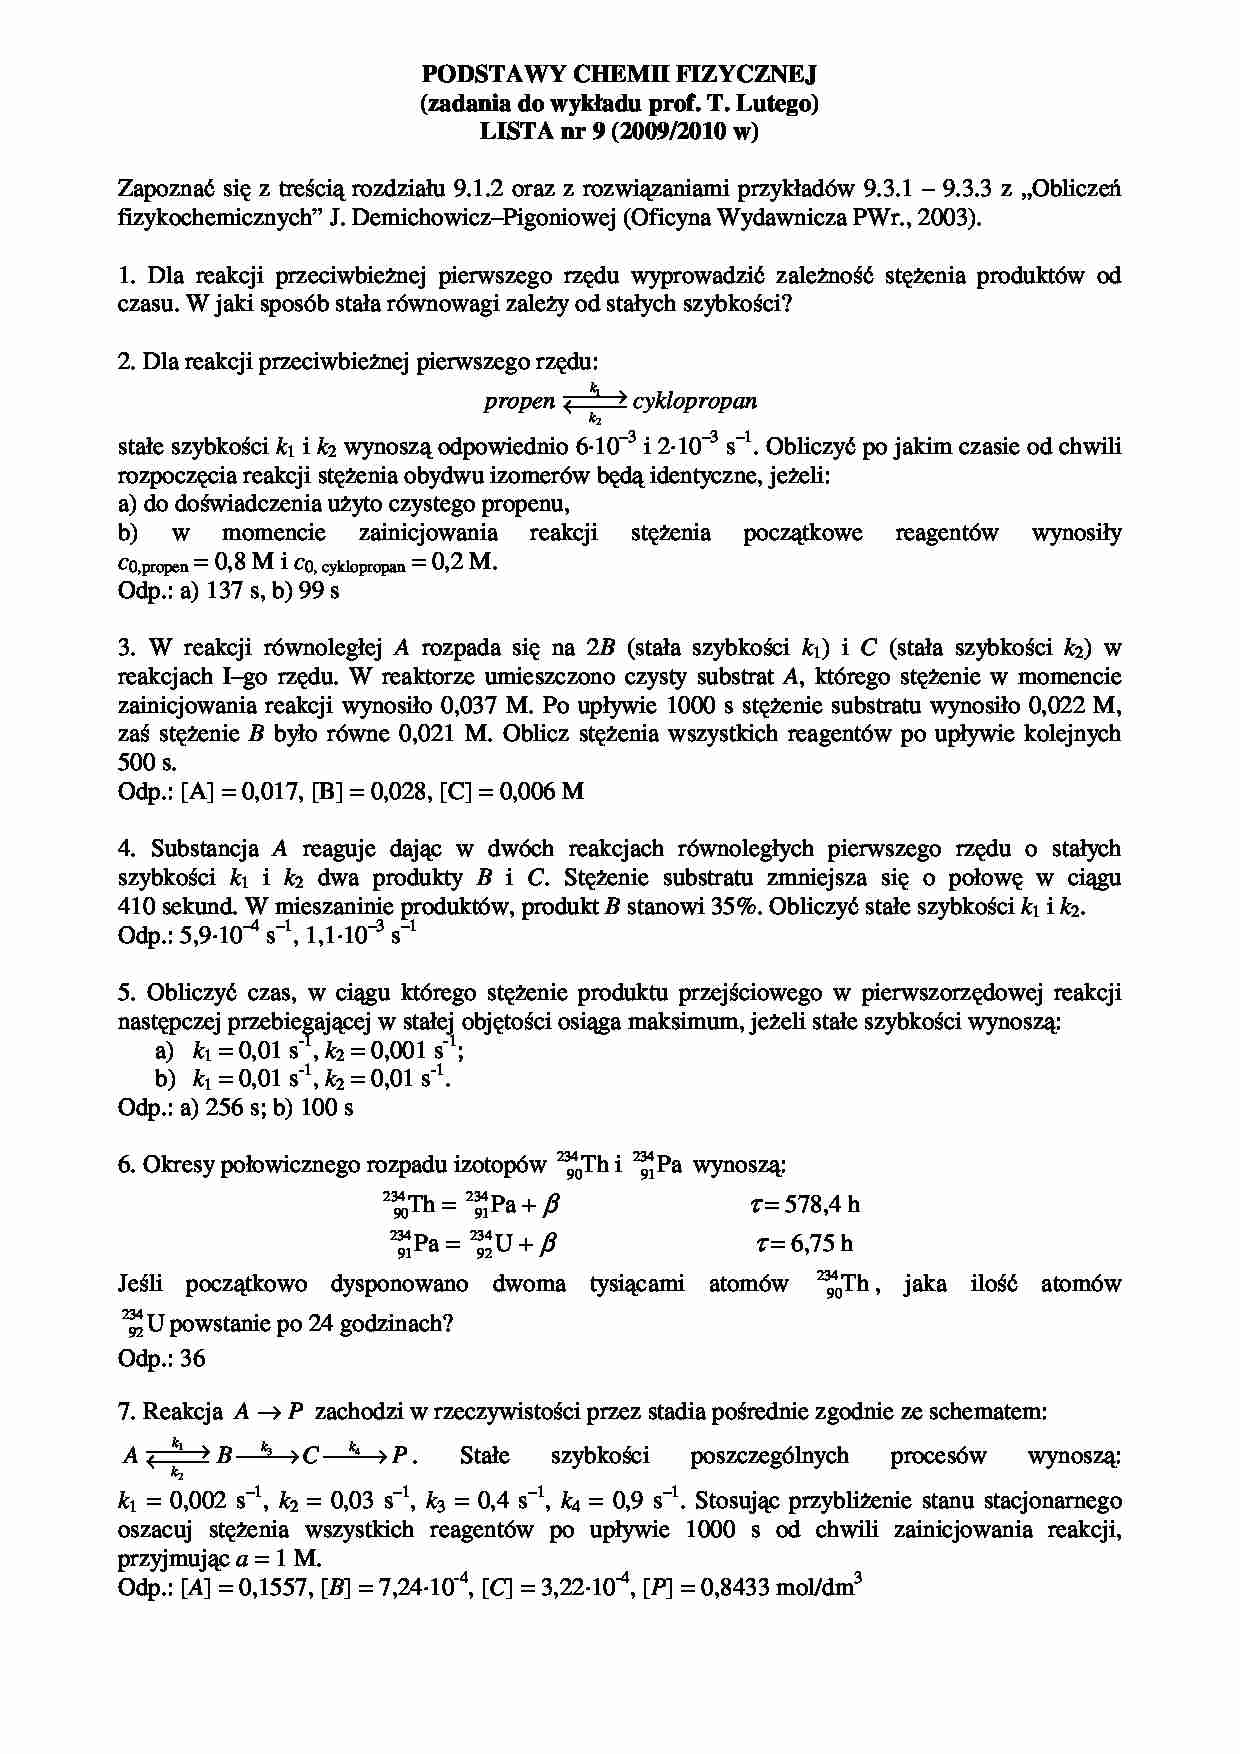 Podstawy chemii fizycznej - lista nr 9  - strona 1